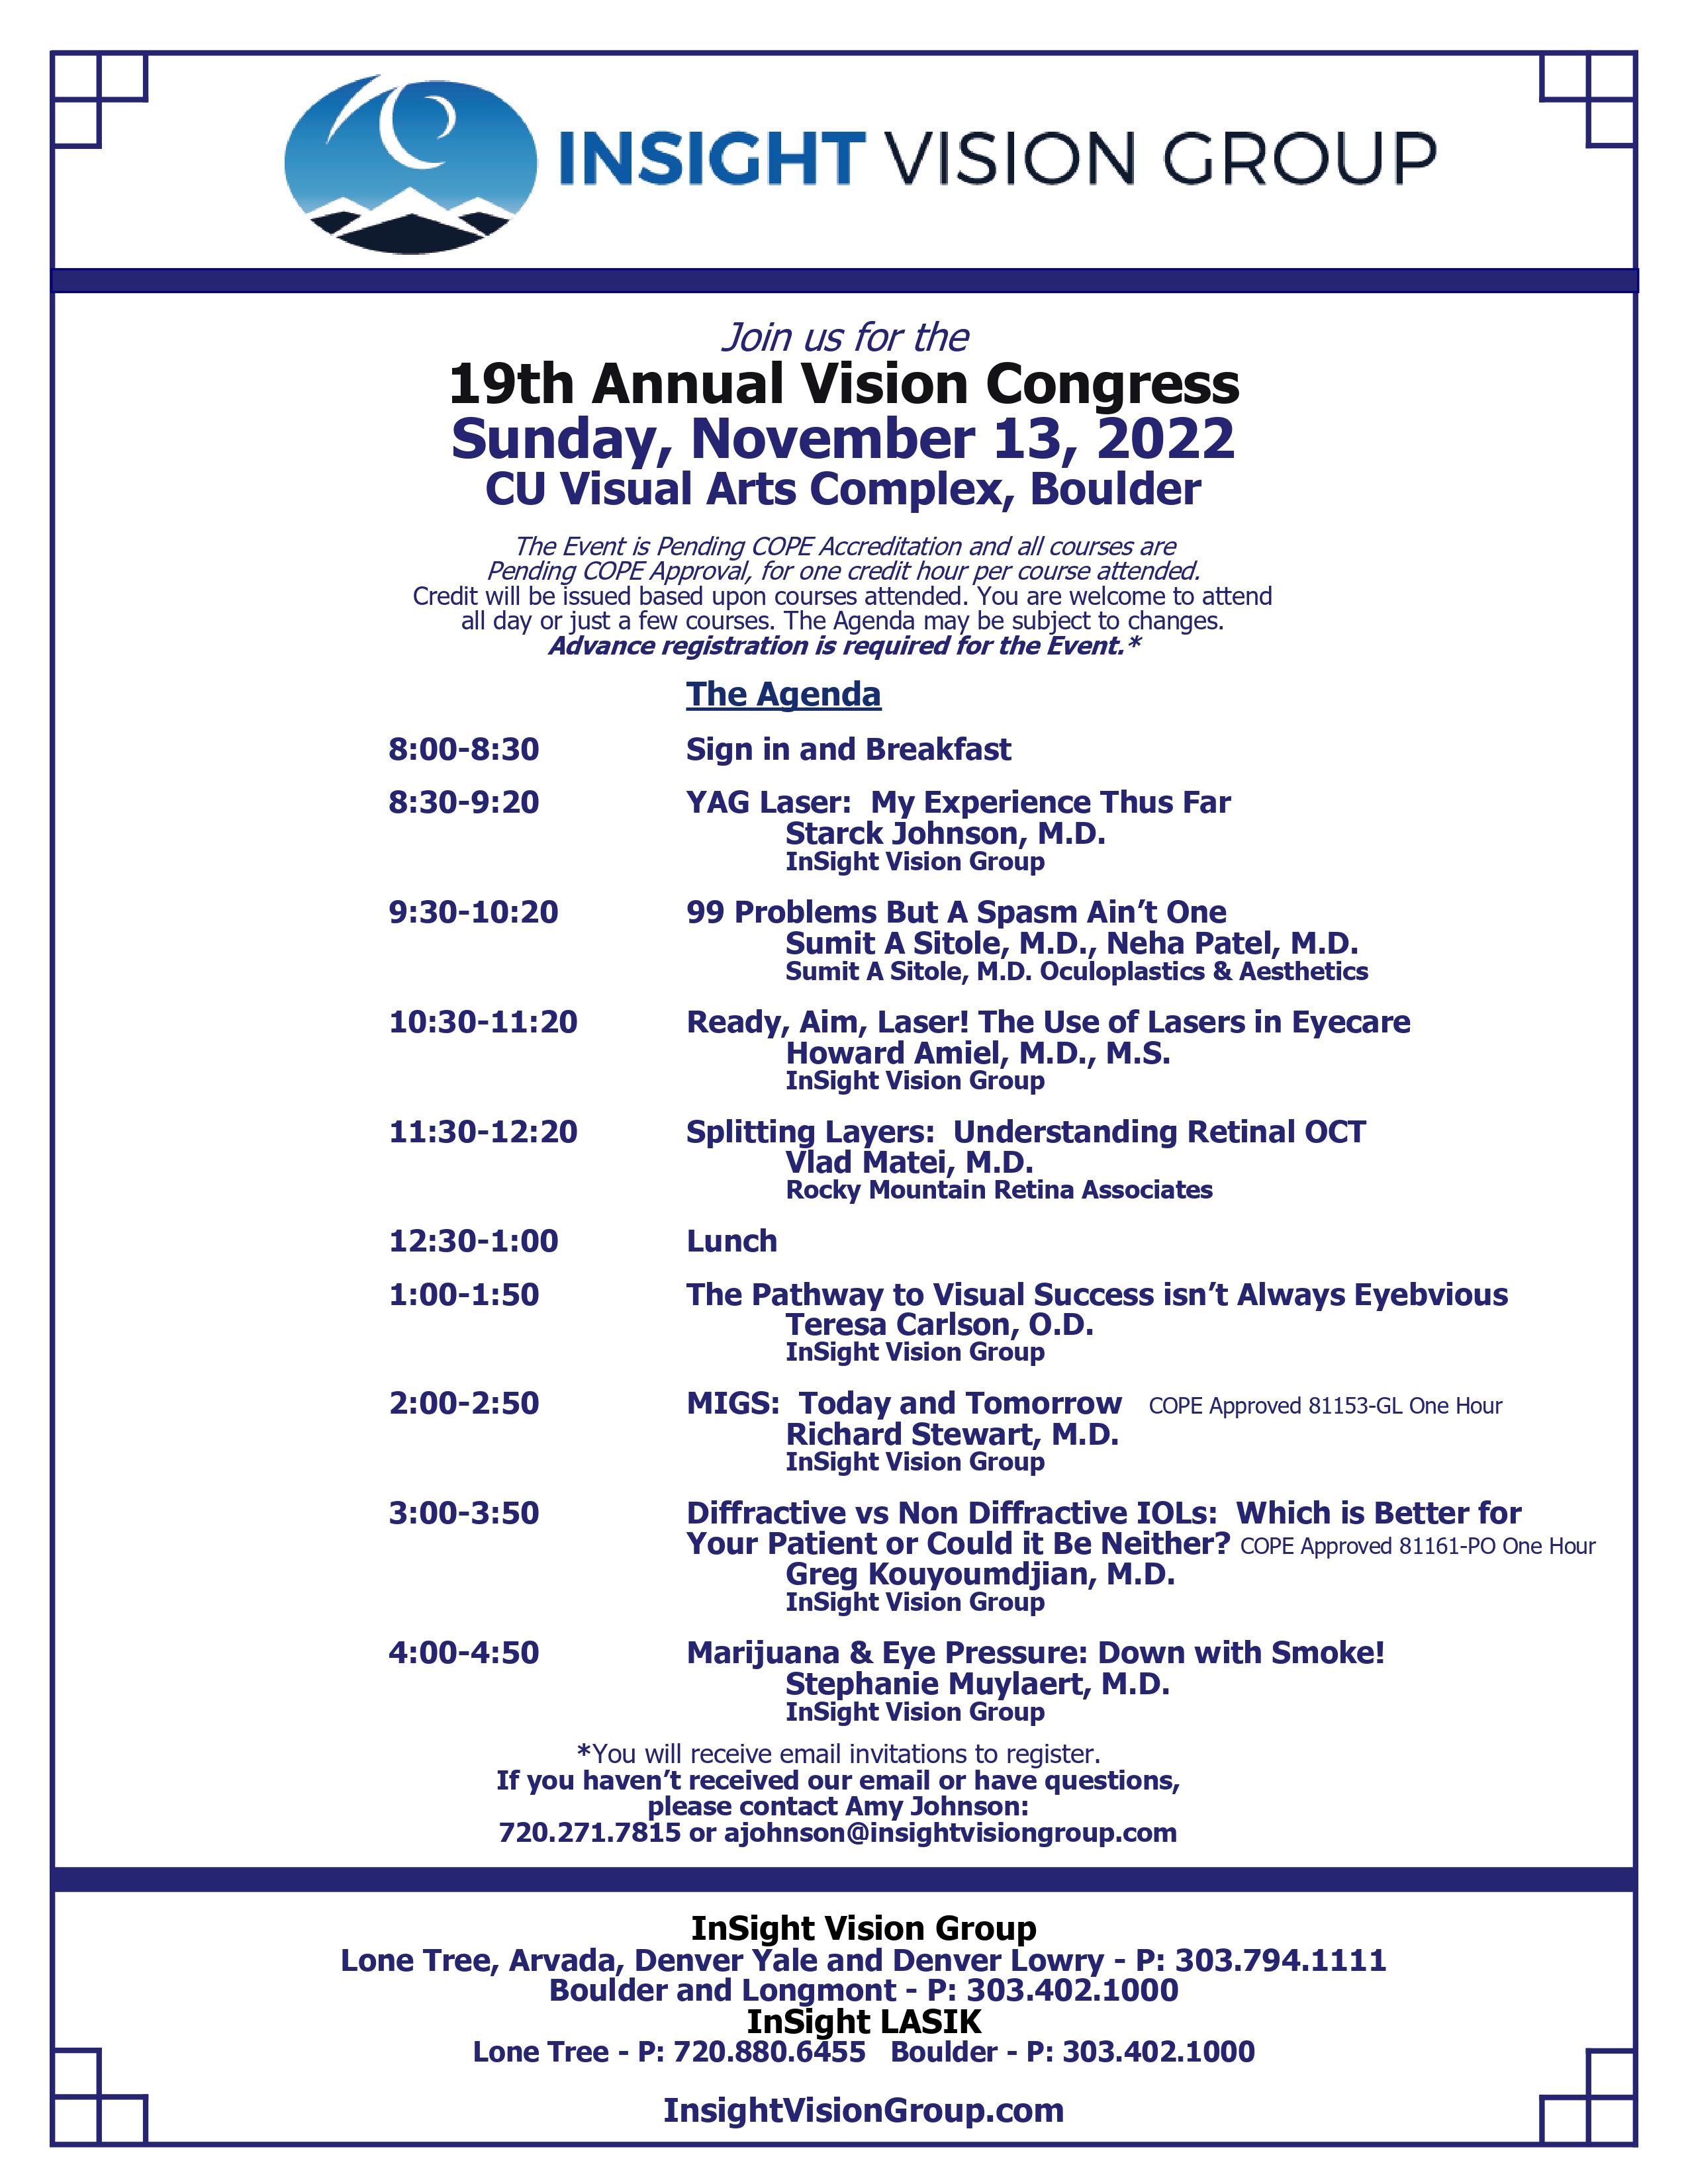 
19th Annual Fall Vision Congress